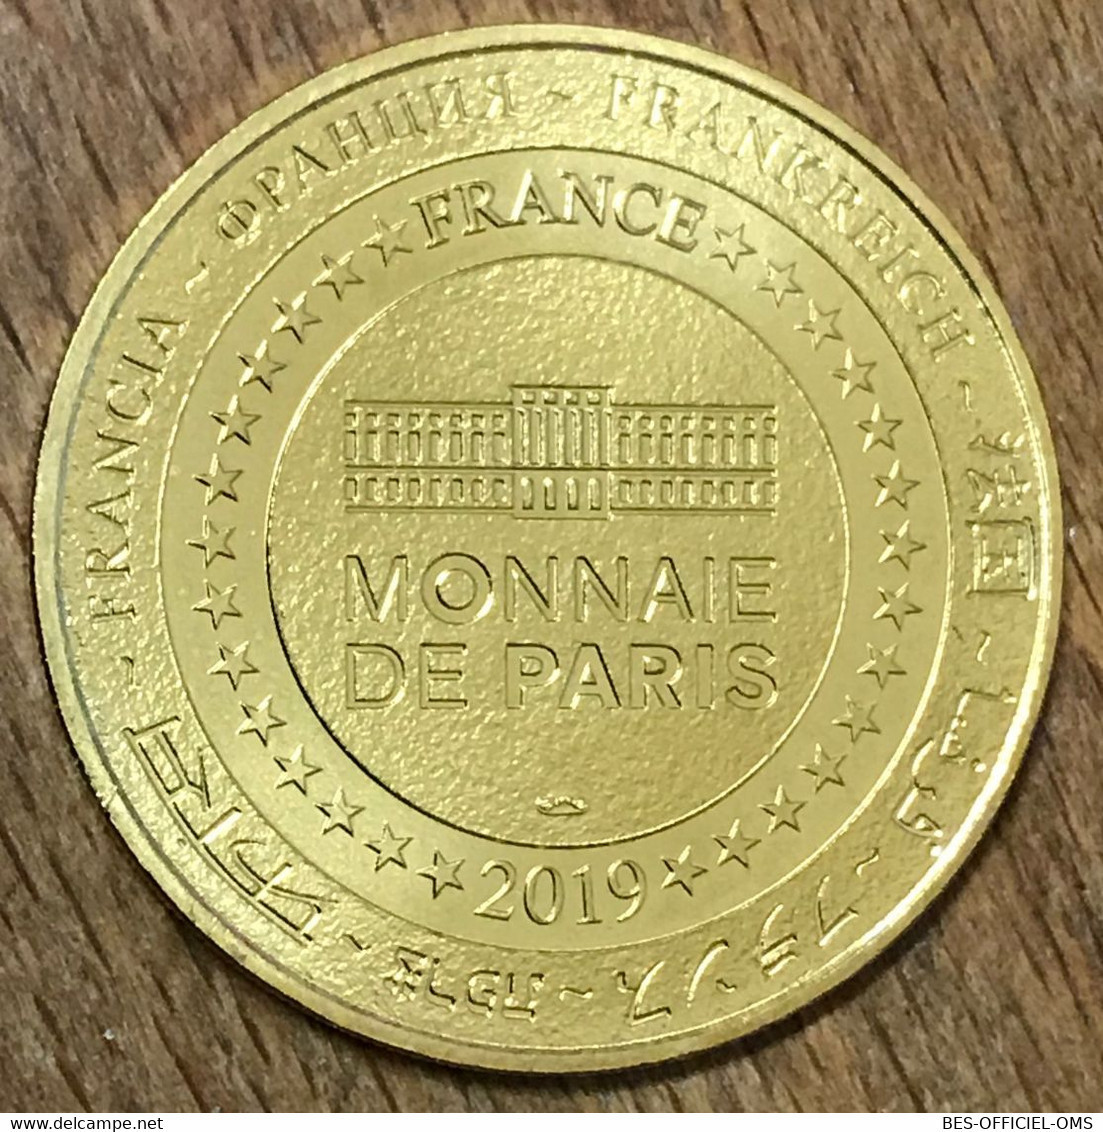 45 ORLÉANS JEANNE D'ARC ASSO NUMISMATIQUE MDP 2019 MÉDAILLE MONNAIE DE PARIS JETON TOURISTIQUE MEDALS COINS TOKENS - 2019